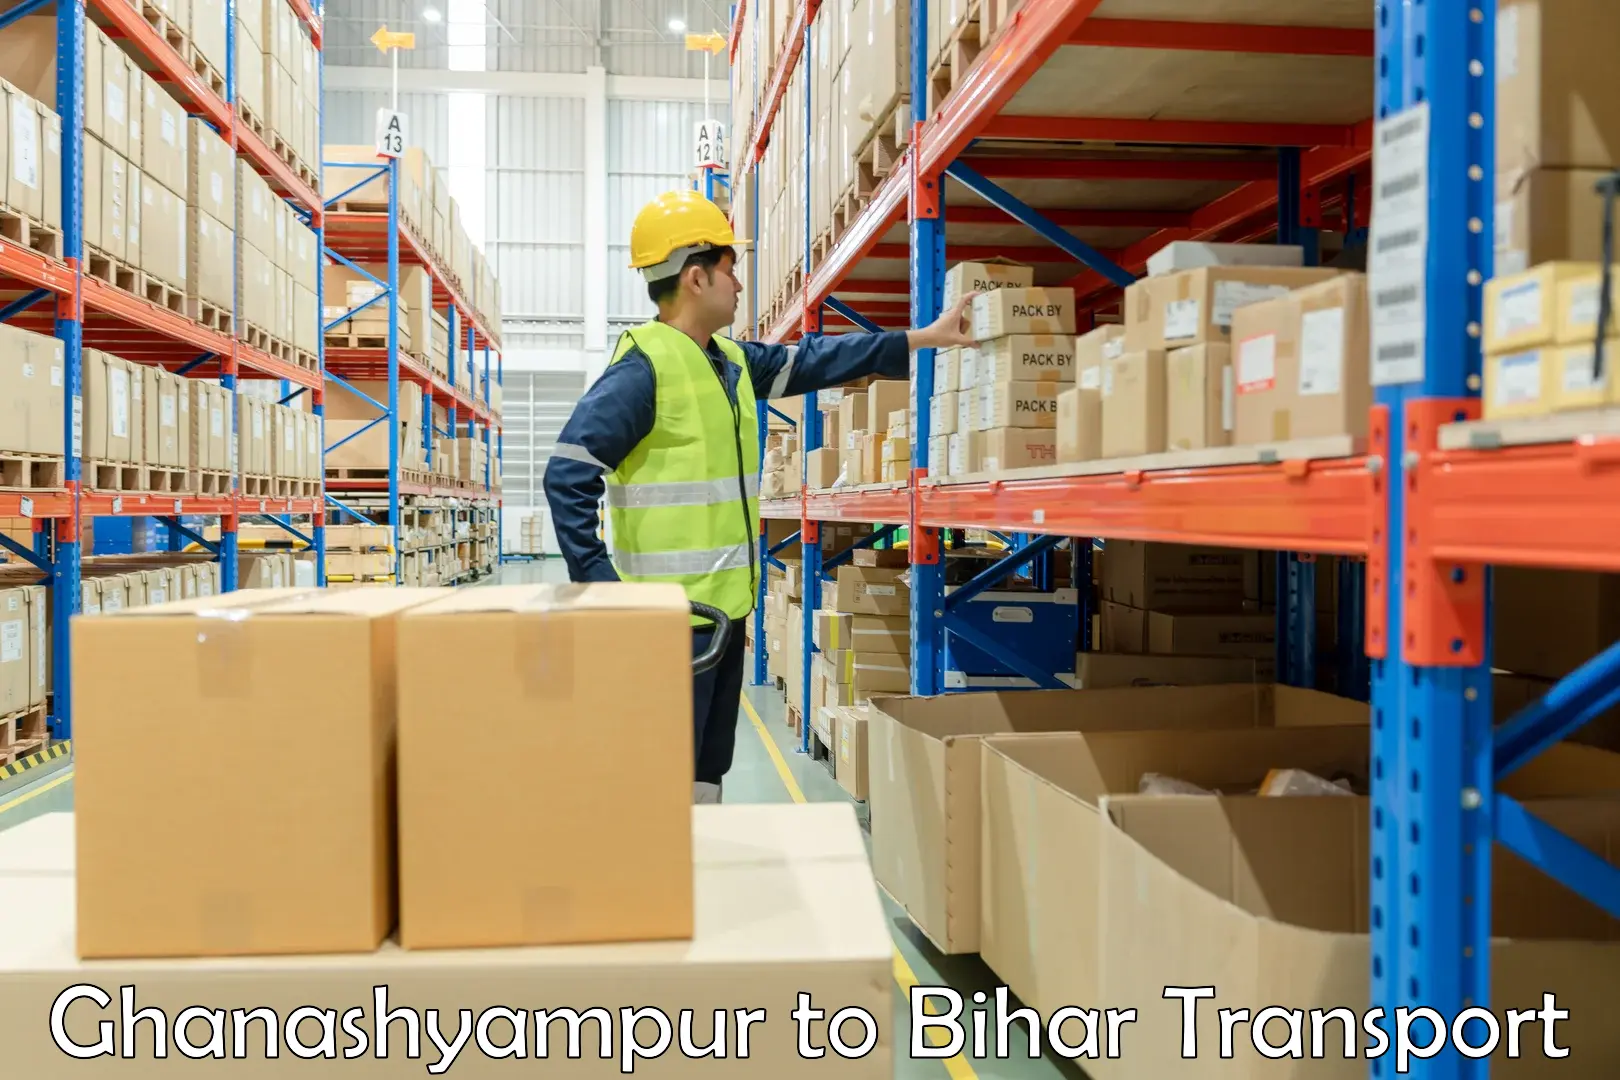 Transport shared services Ghanashyampur to Jagdishpur Bhojpur